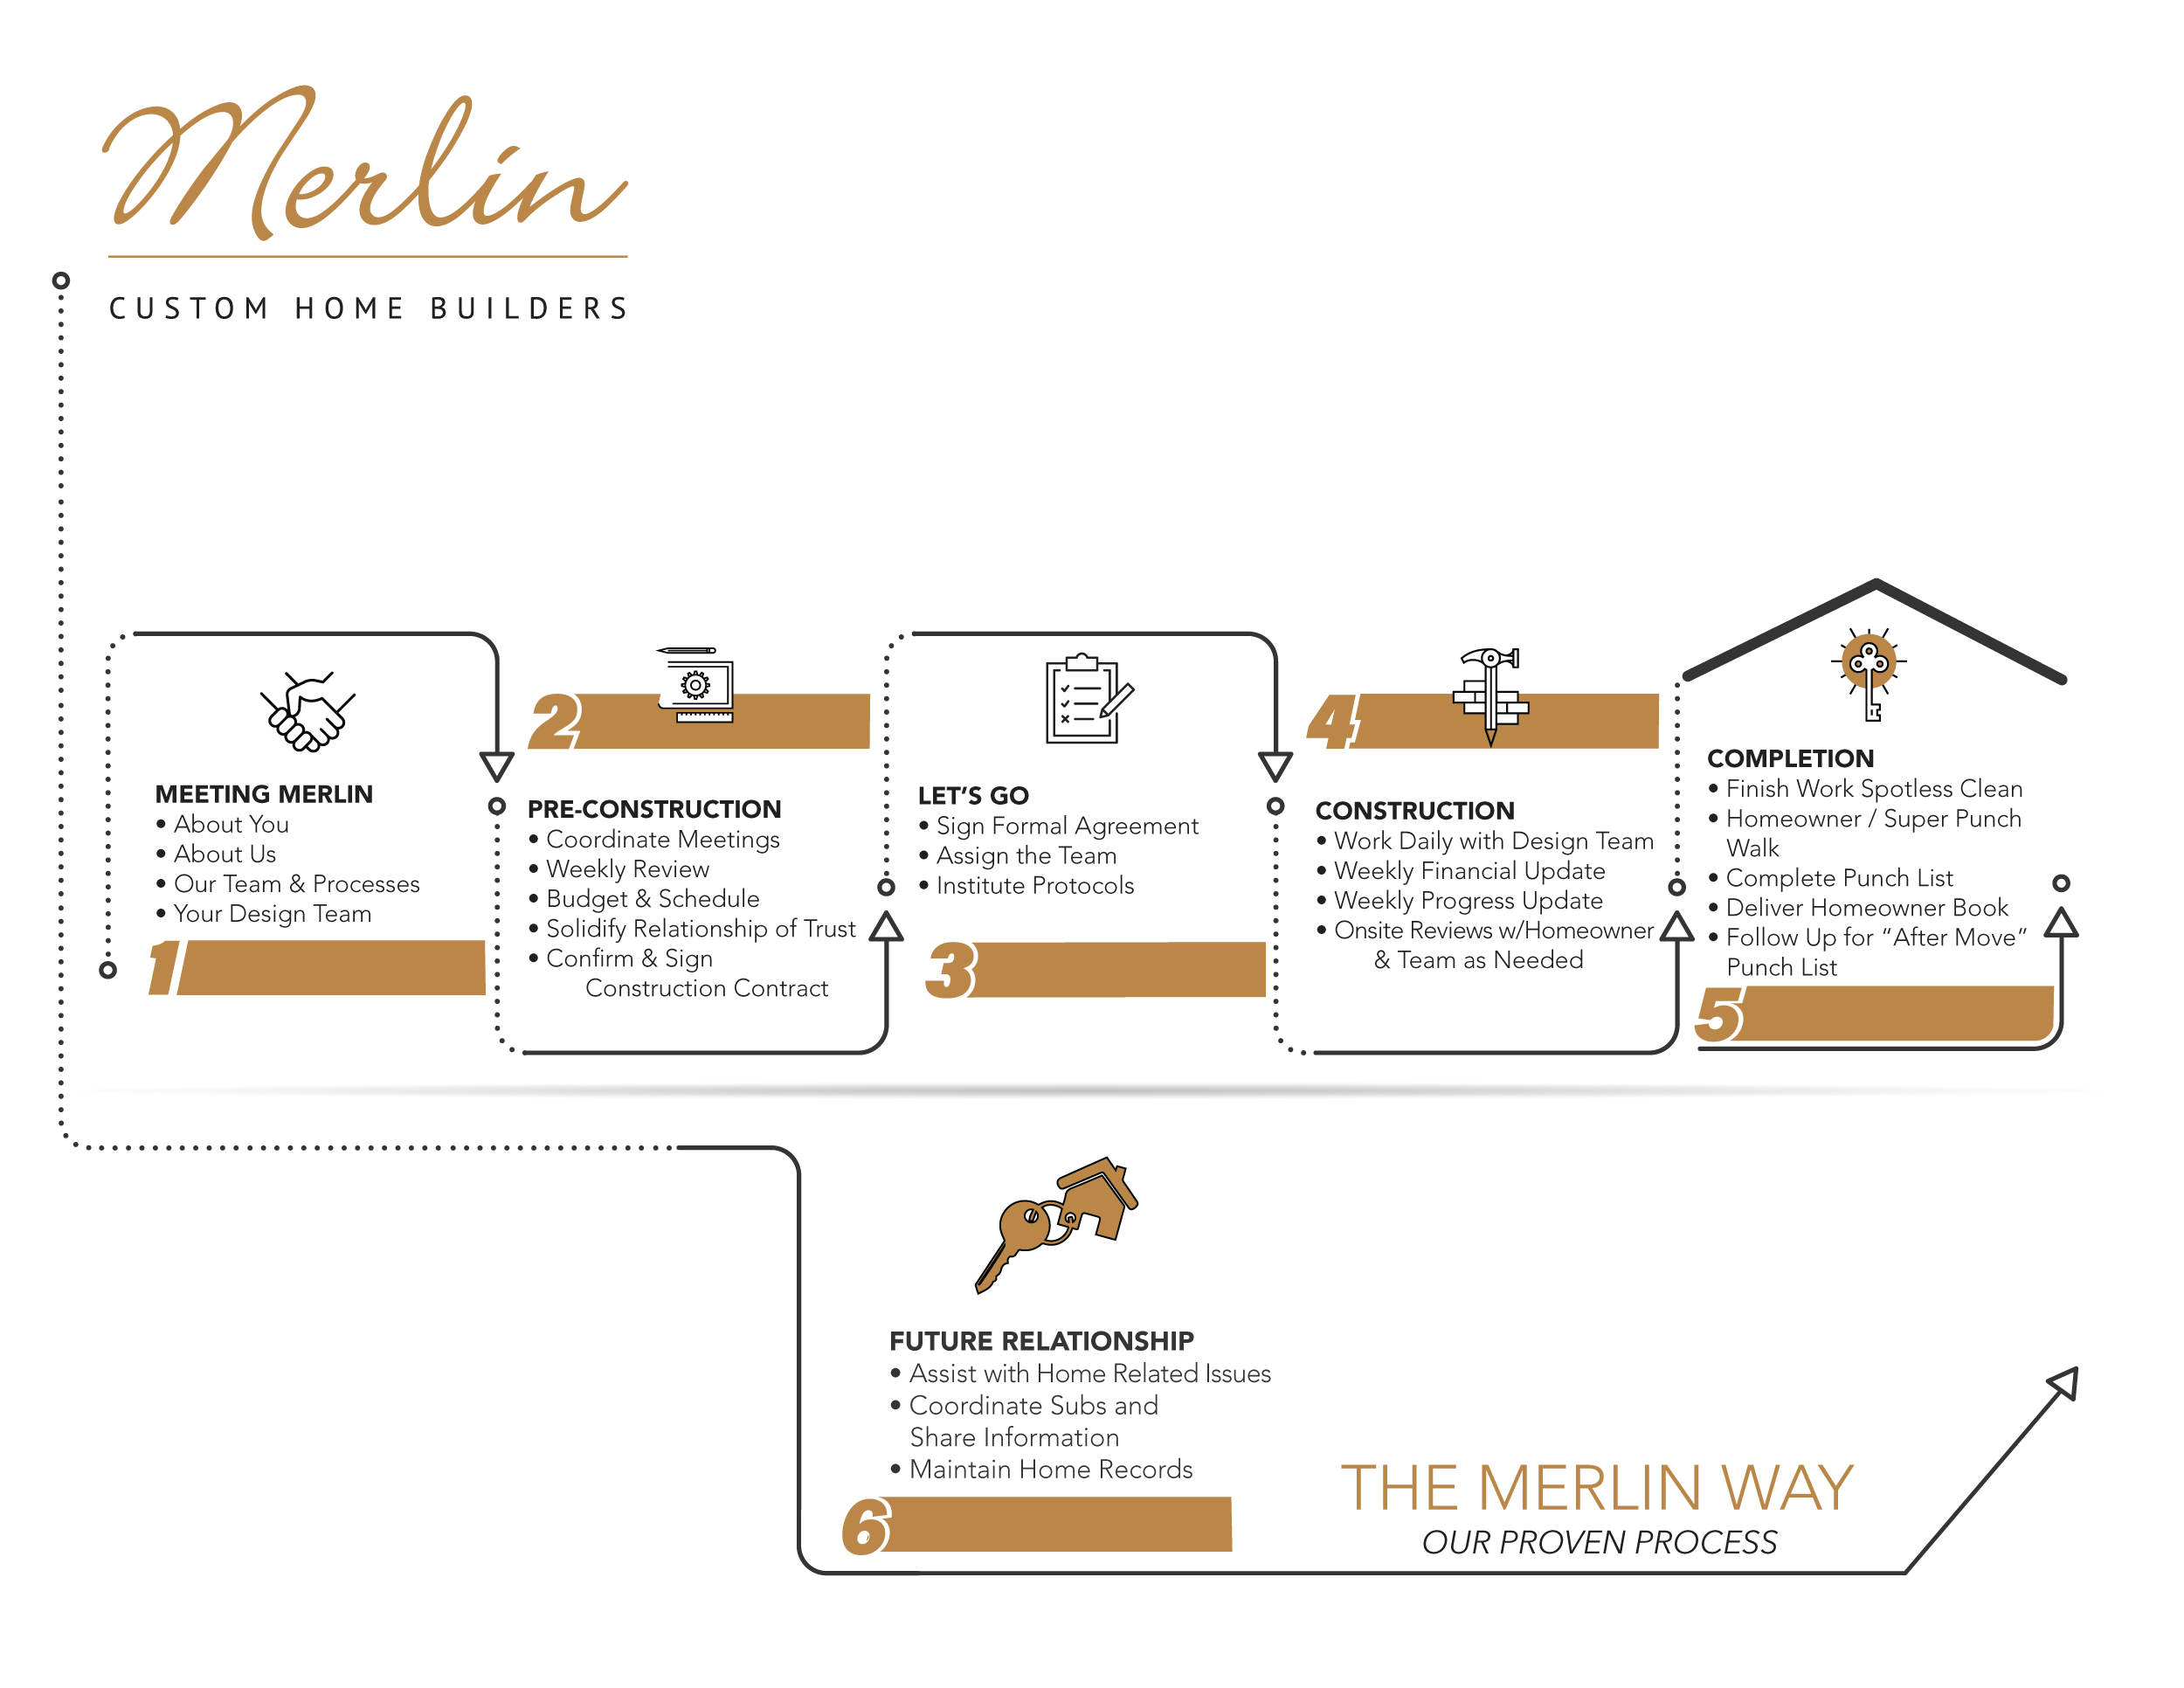 The Best Custom Home Builders - Merlin